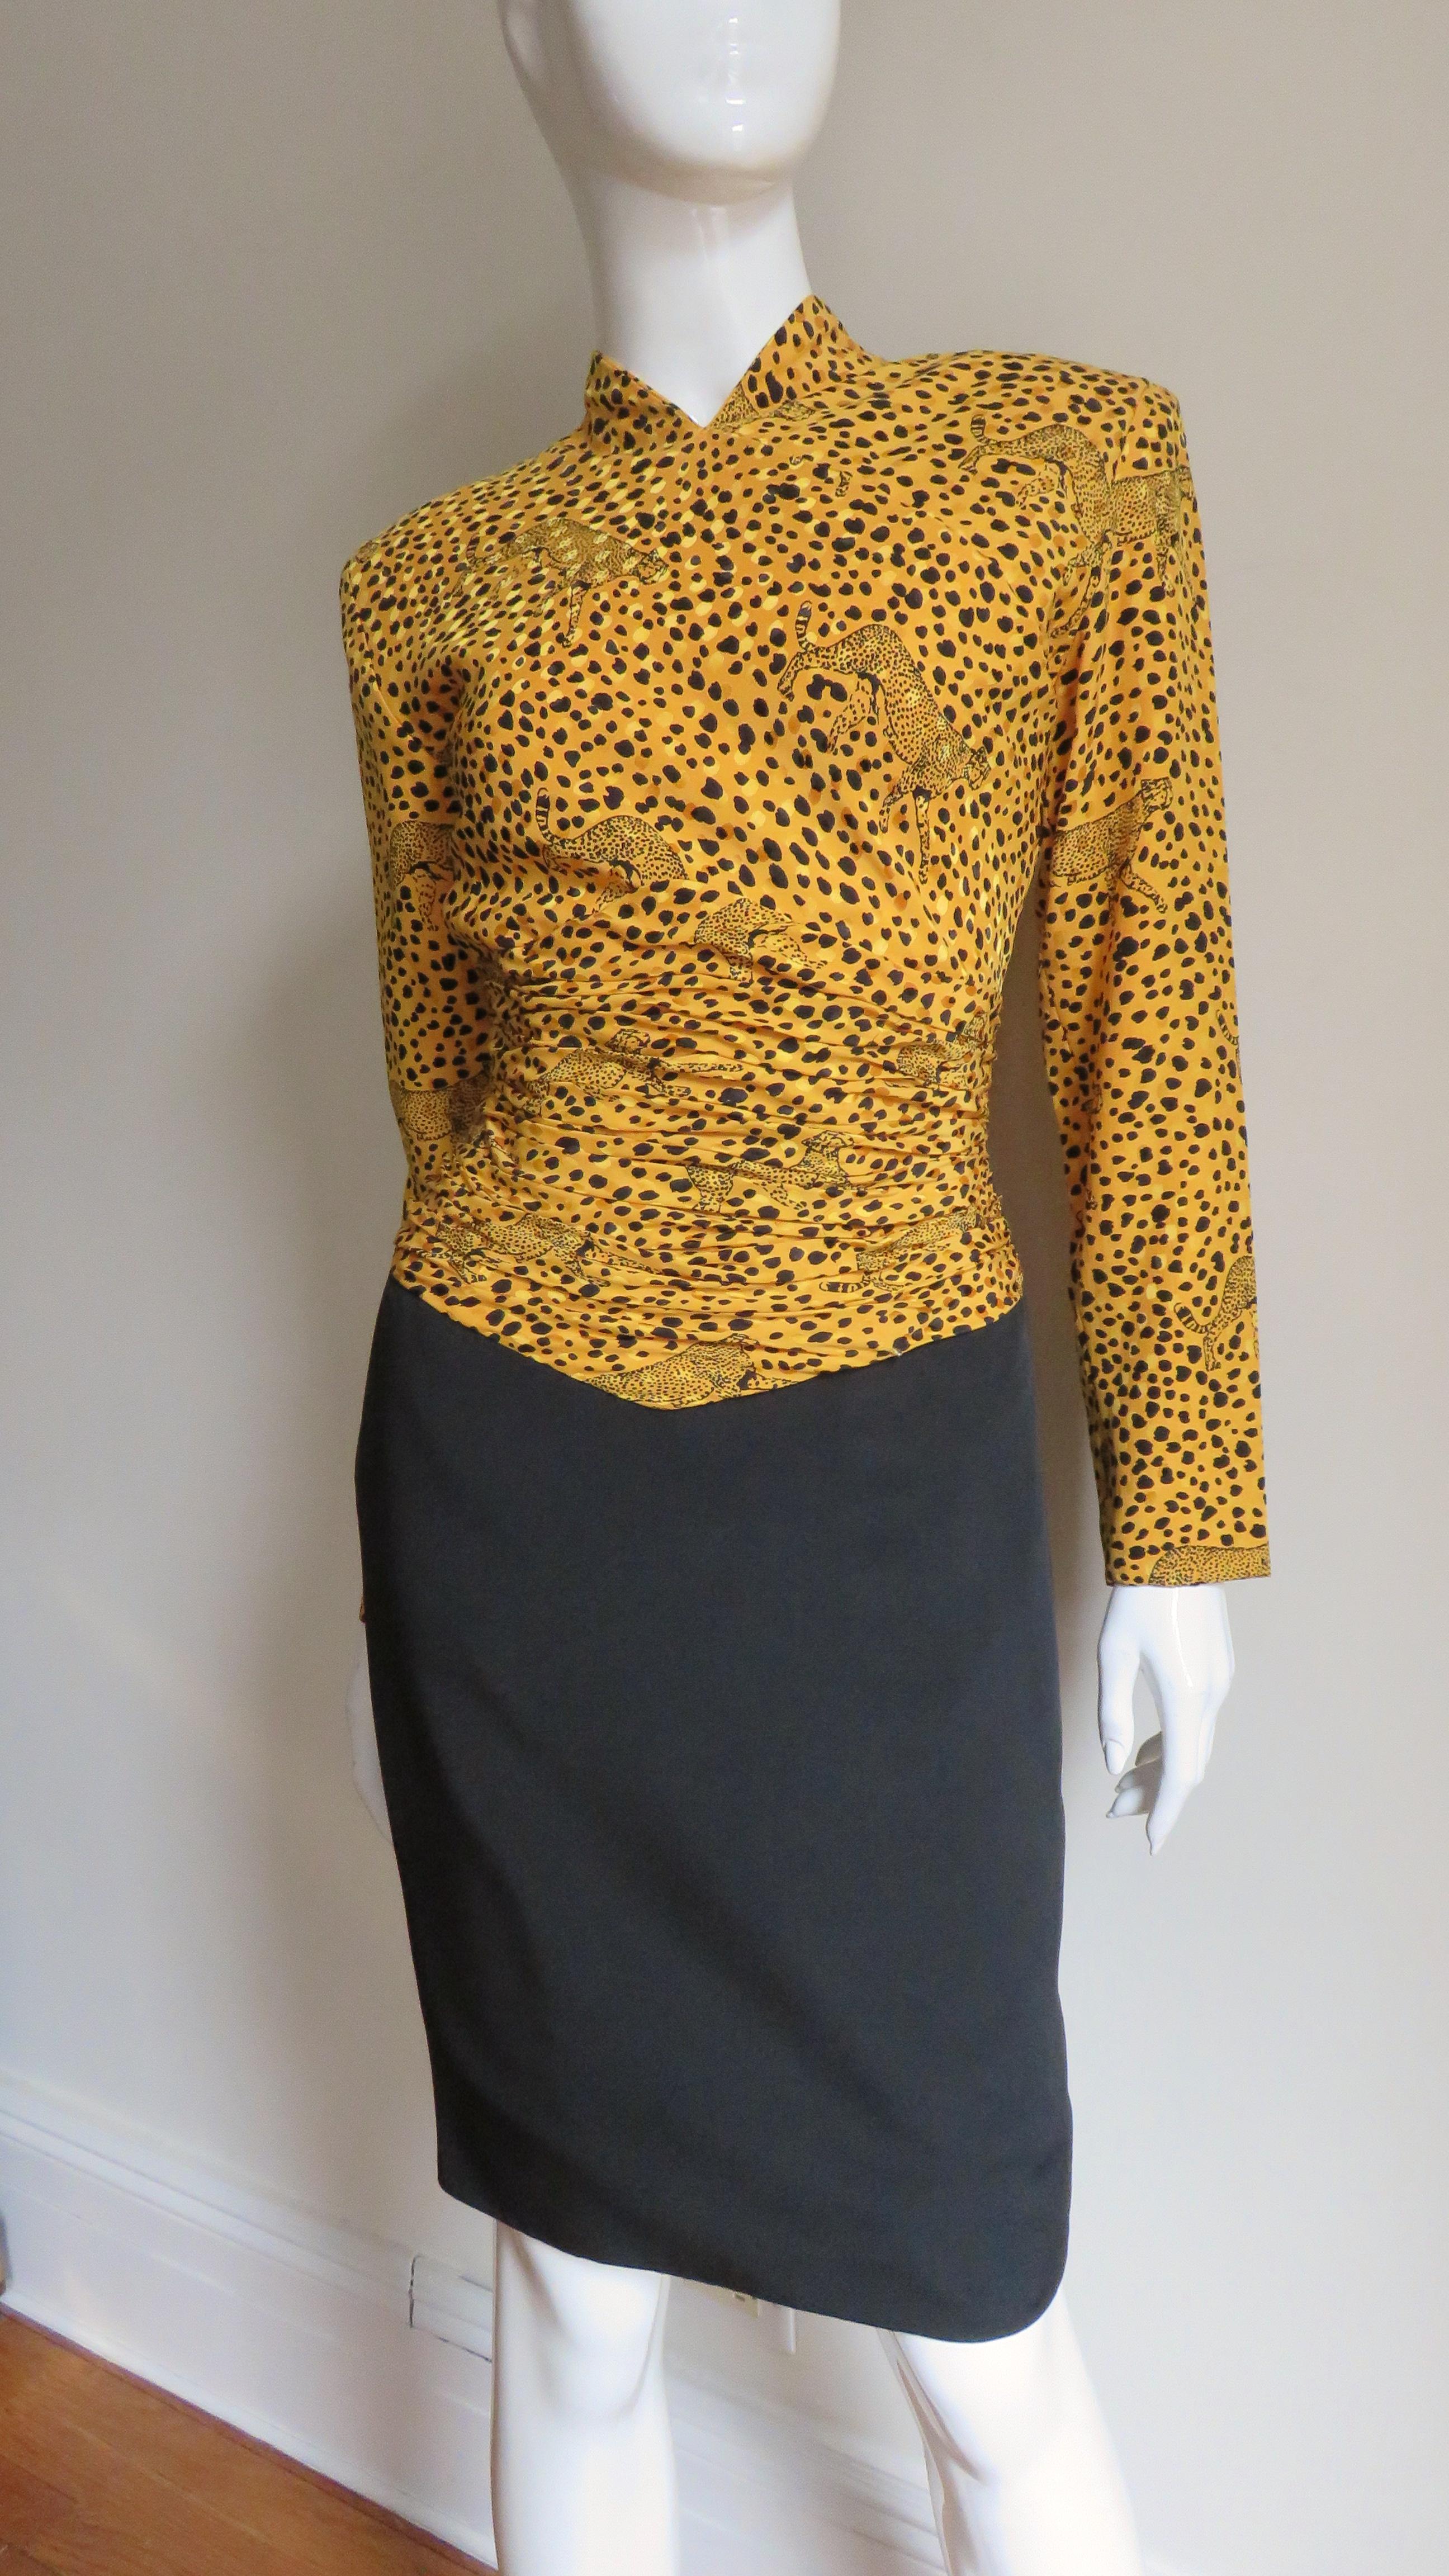 Une superbe robe en soie de Vicky Tiel Couture avec un imprimé léopard doré avec des léopards sur la partie supérieure et une jupe noire unie. Le corsage a un petit col montant, des manches longues, des os verticaux et des fronces horizontales